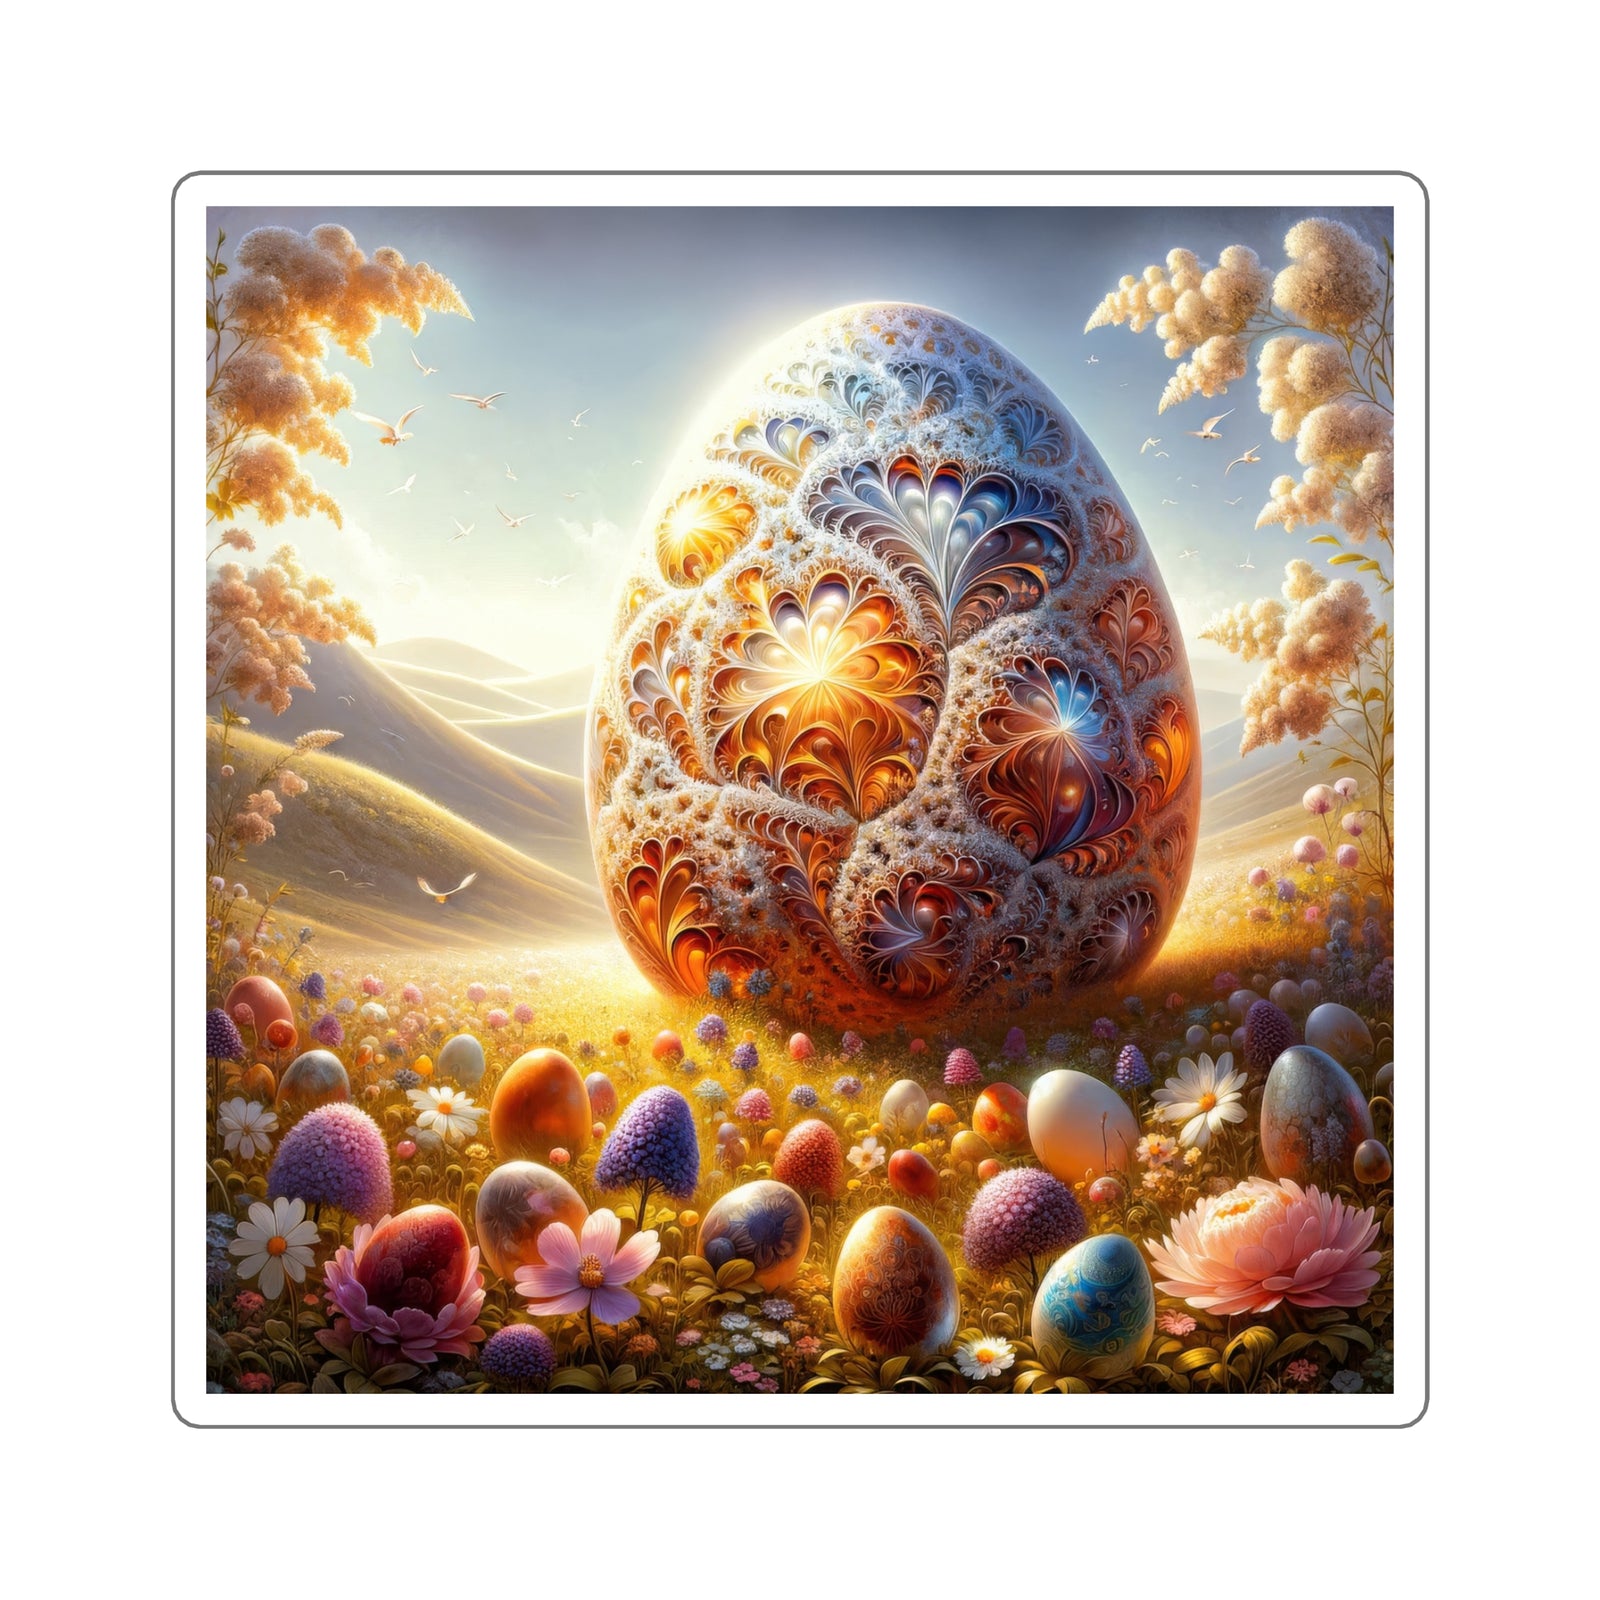 L’œuf opulent : autocollants en forme de cœur artistique de la nature